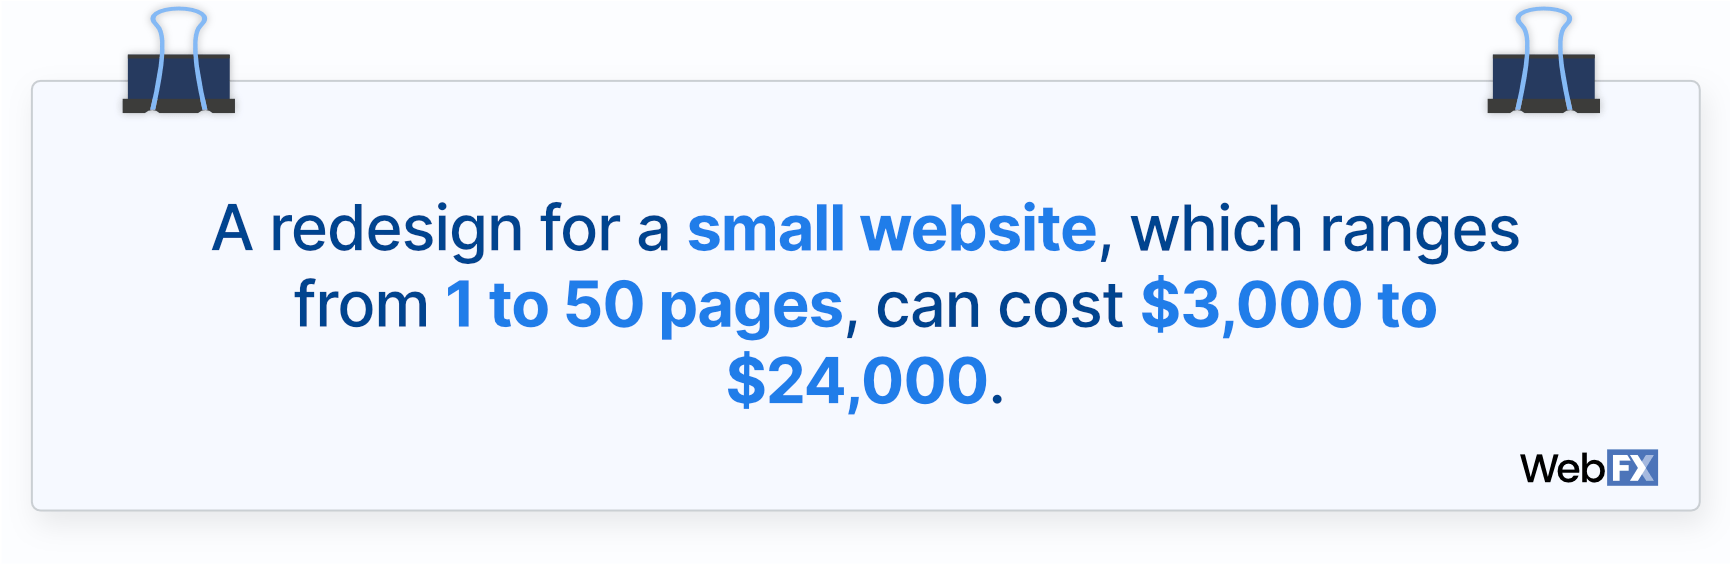 网站重新设计价格为一个小网站